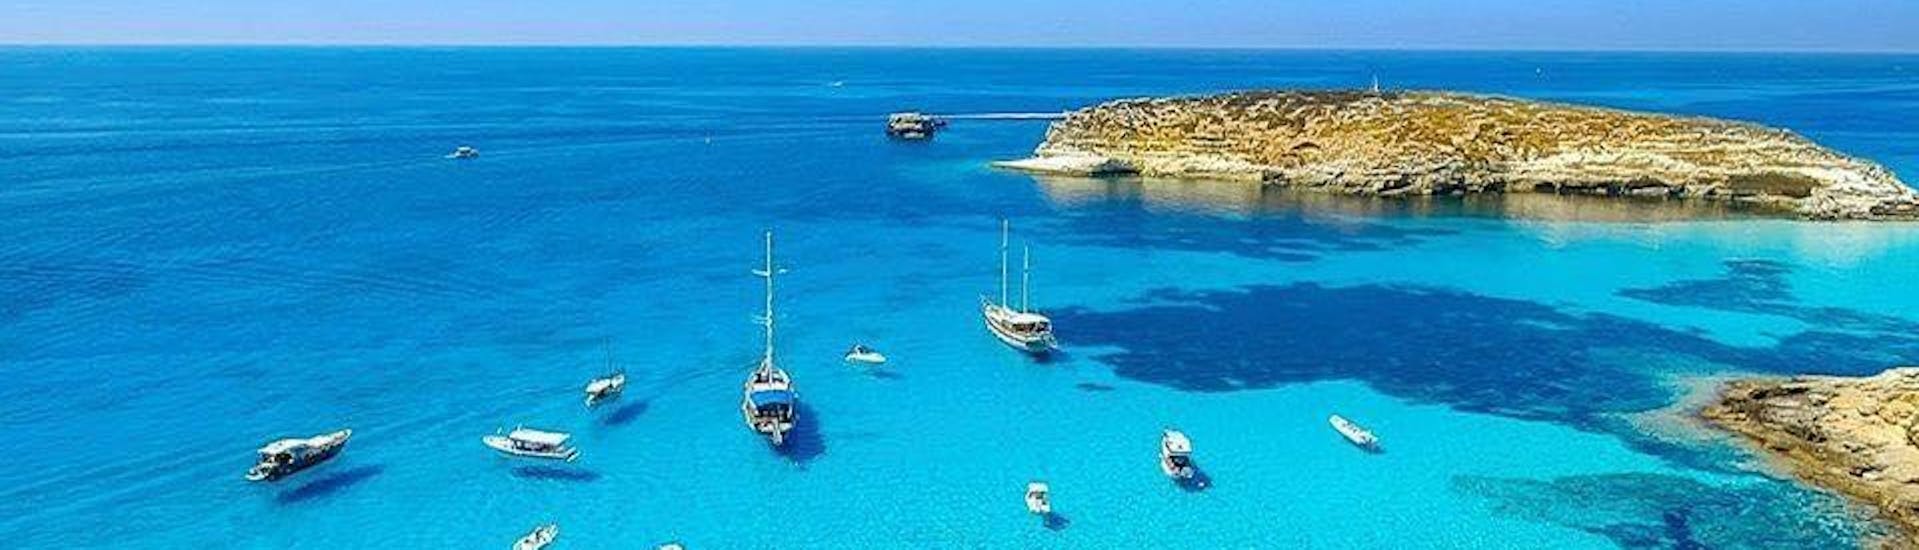 Una delle spiagge mozzafiato che visiteremo durante il giro in barca a Lampedusa con pranzo con Gita in barca Liliana Lampedusa.